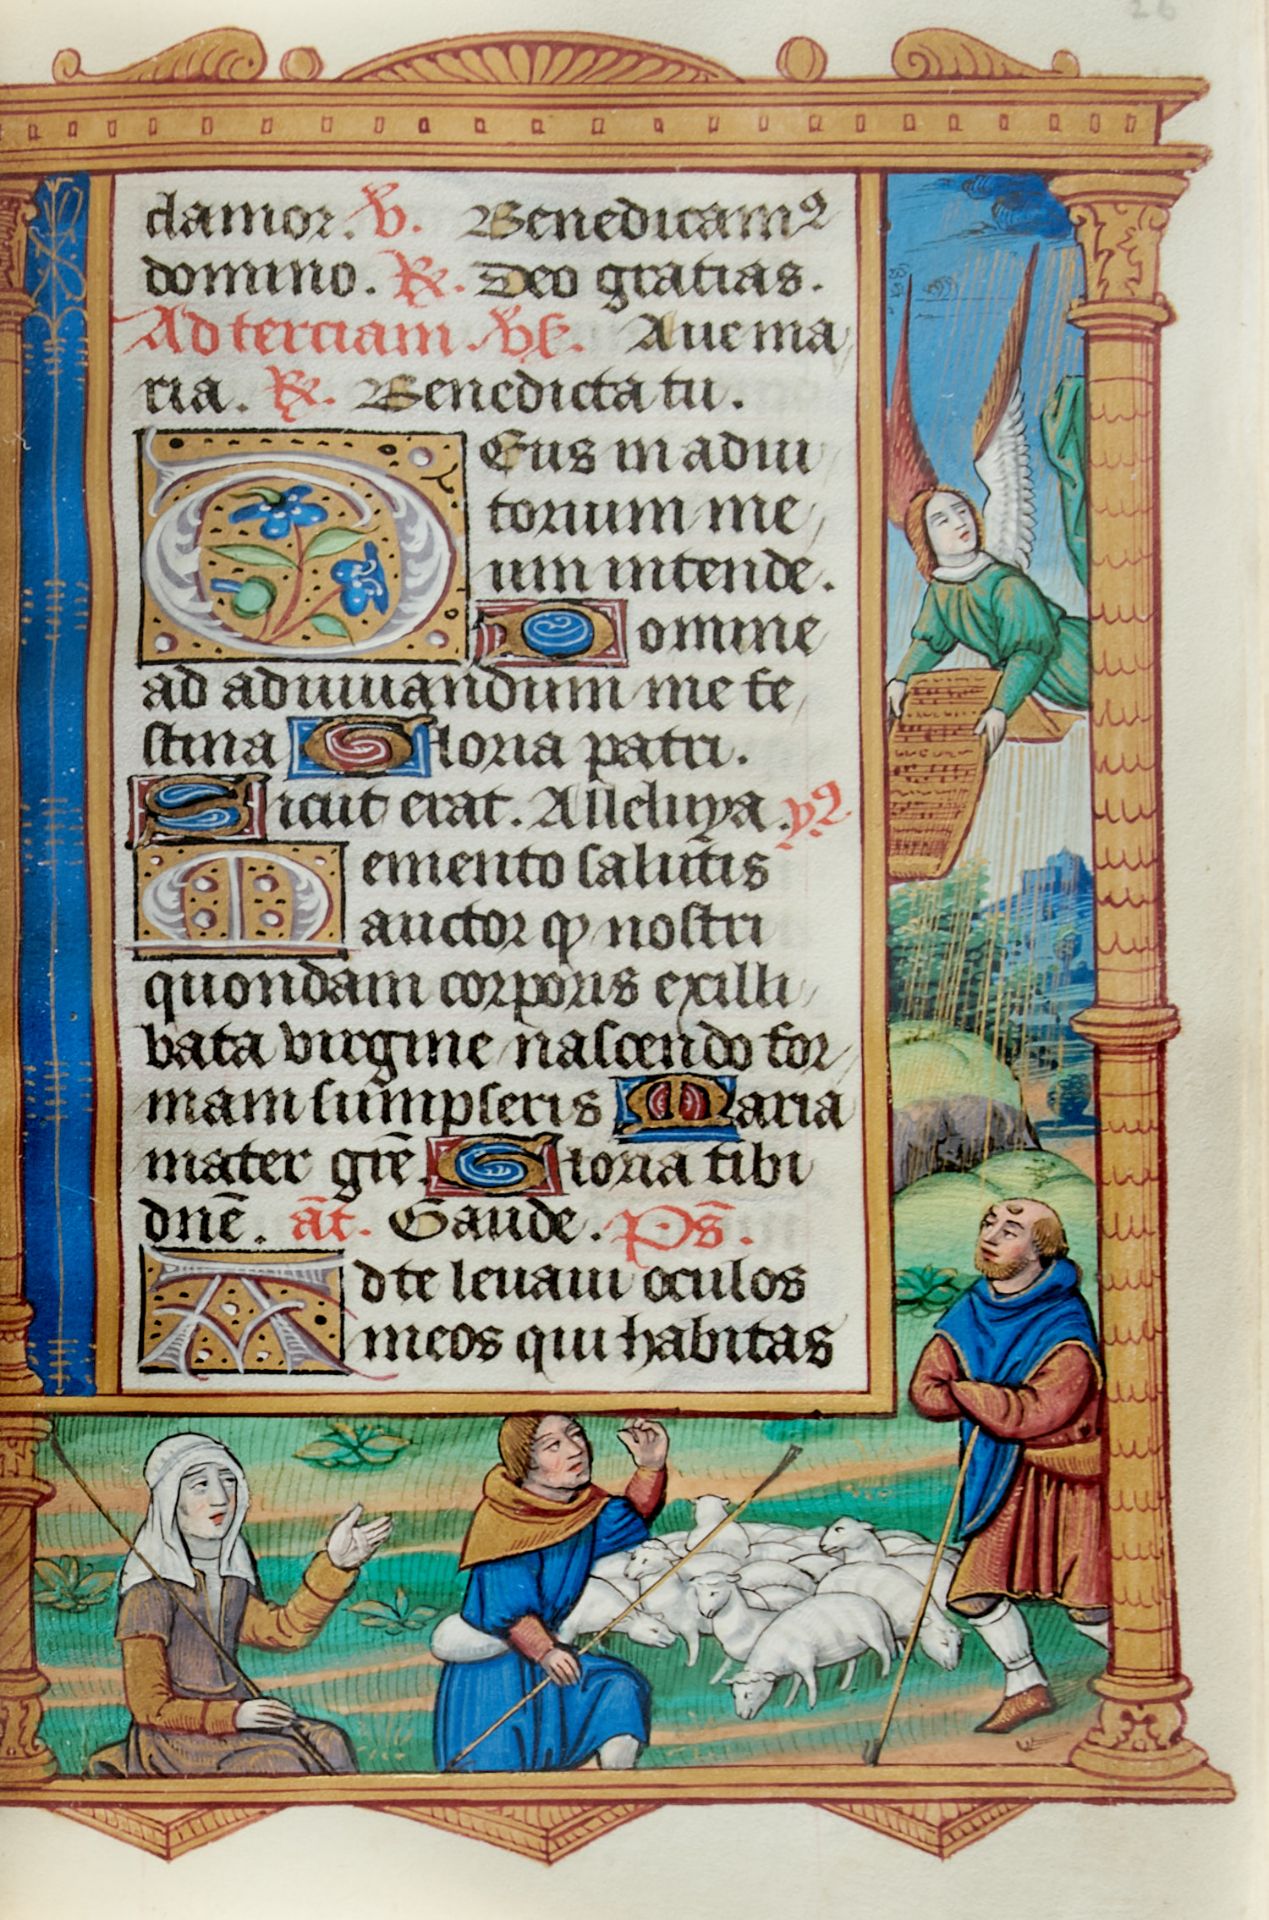 Pariser Stundenbuch. Lateinische Handschrift auf Pergament. Paris, um 1500. Ca. 14 x 10 cm. - Image 10 of 26